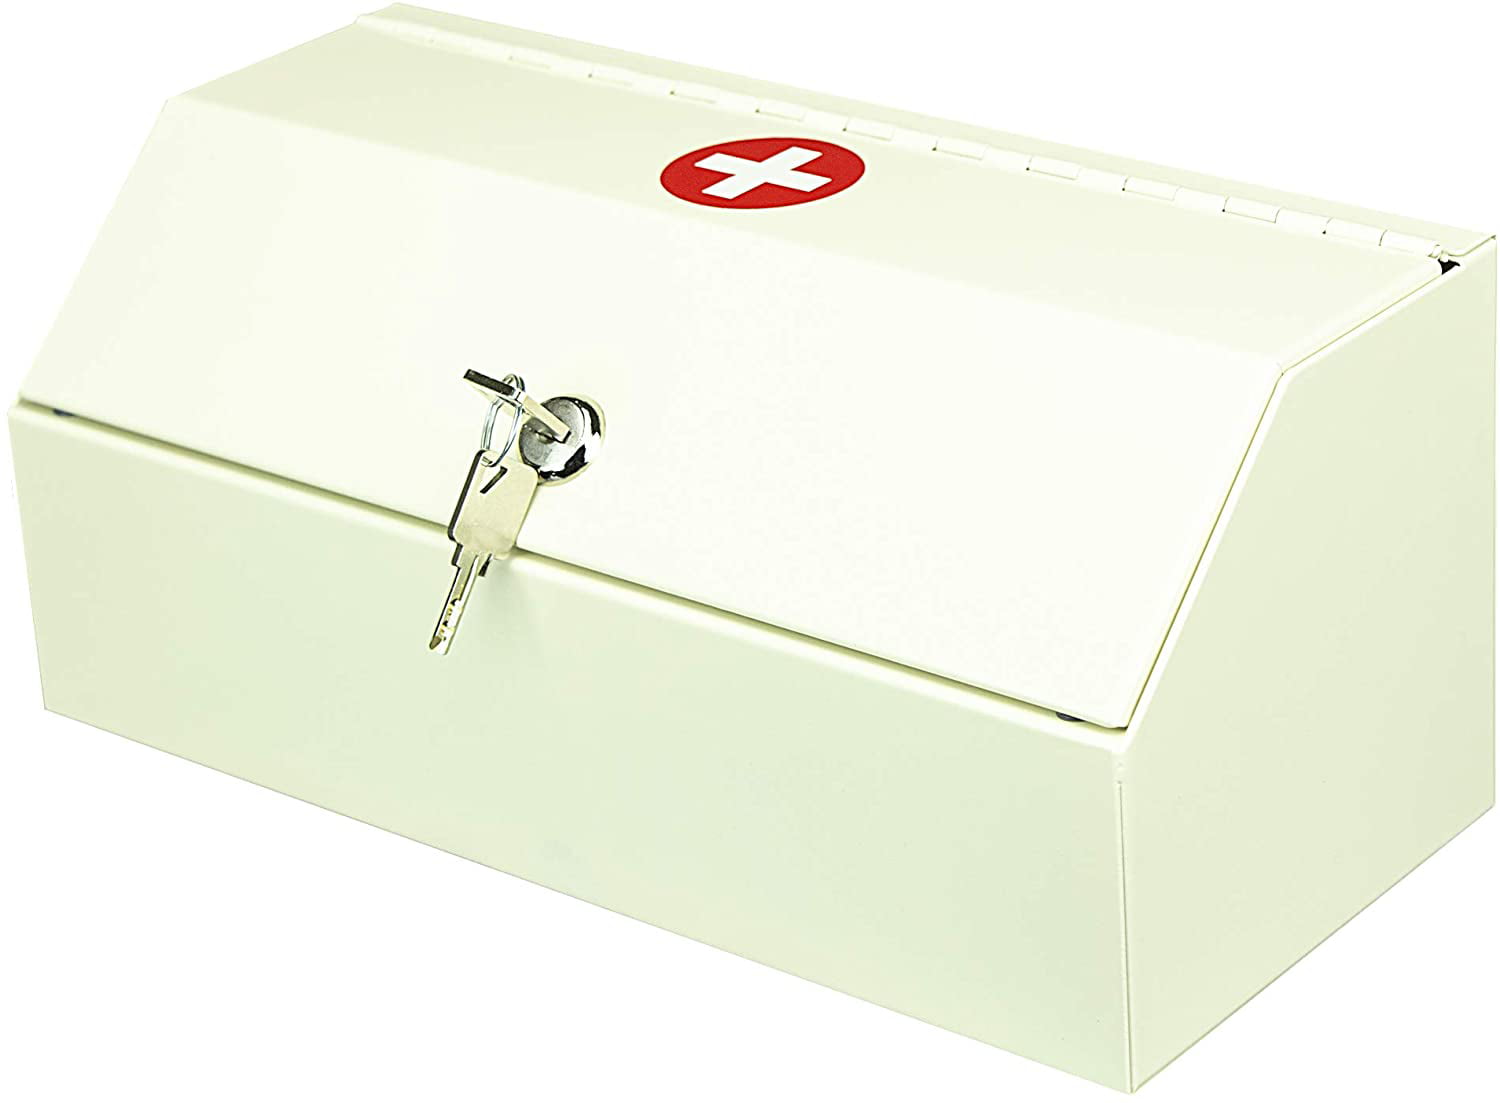 Plugsharge Medicine Lock Box for Safe Medication Storage,Lockable Medicine Cabinet Child Proof Medicine Organizer,Locking Medicine Cabinet Wall